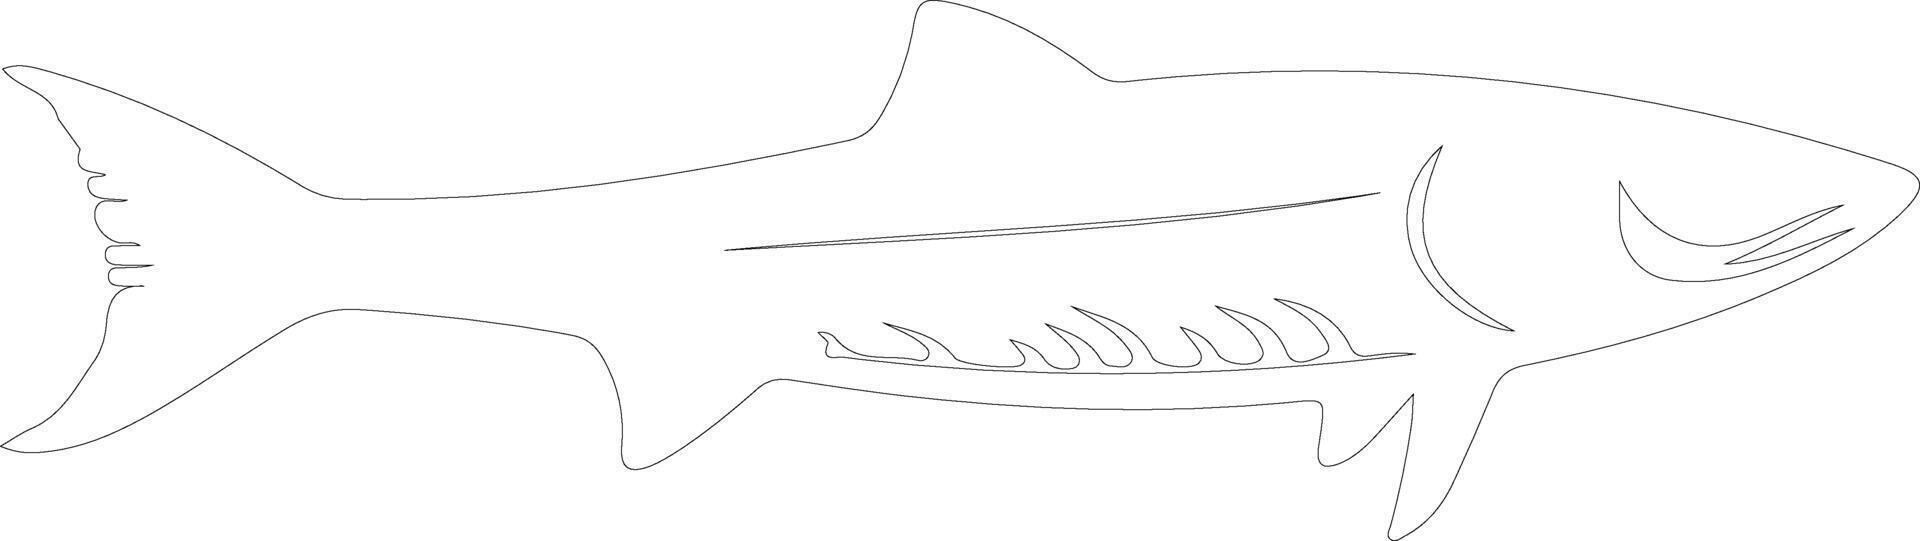 barracuda esboço silhueta vetor